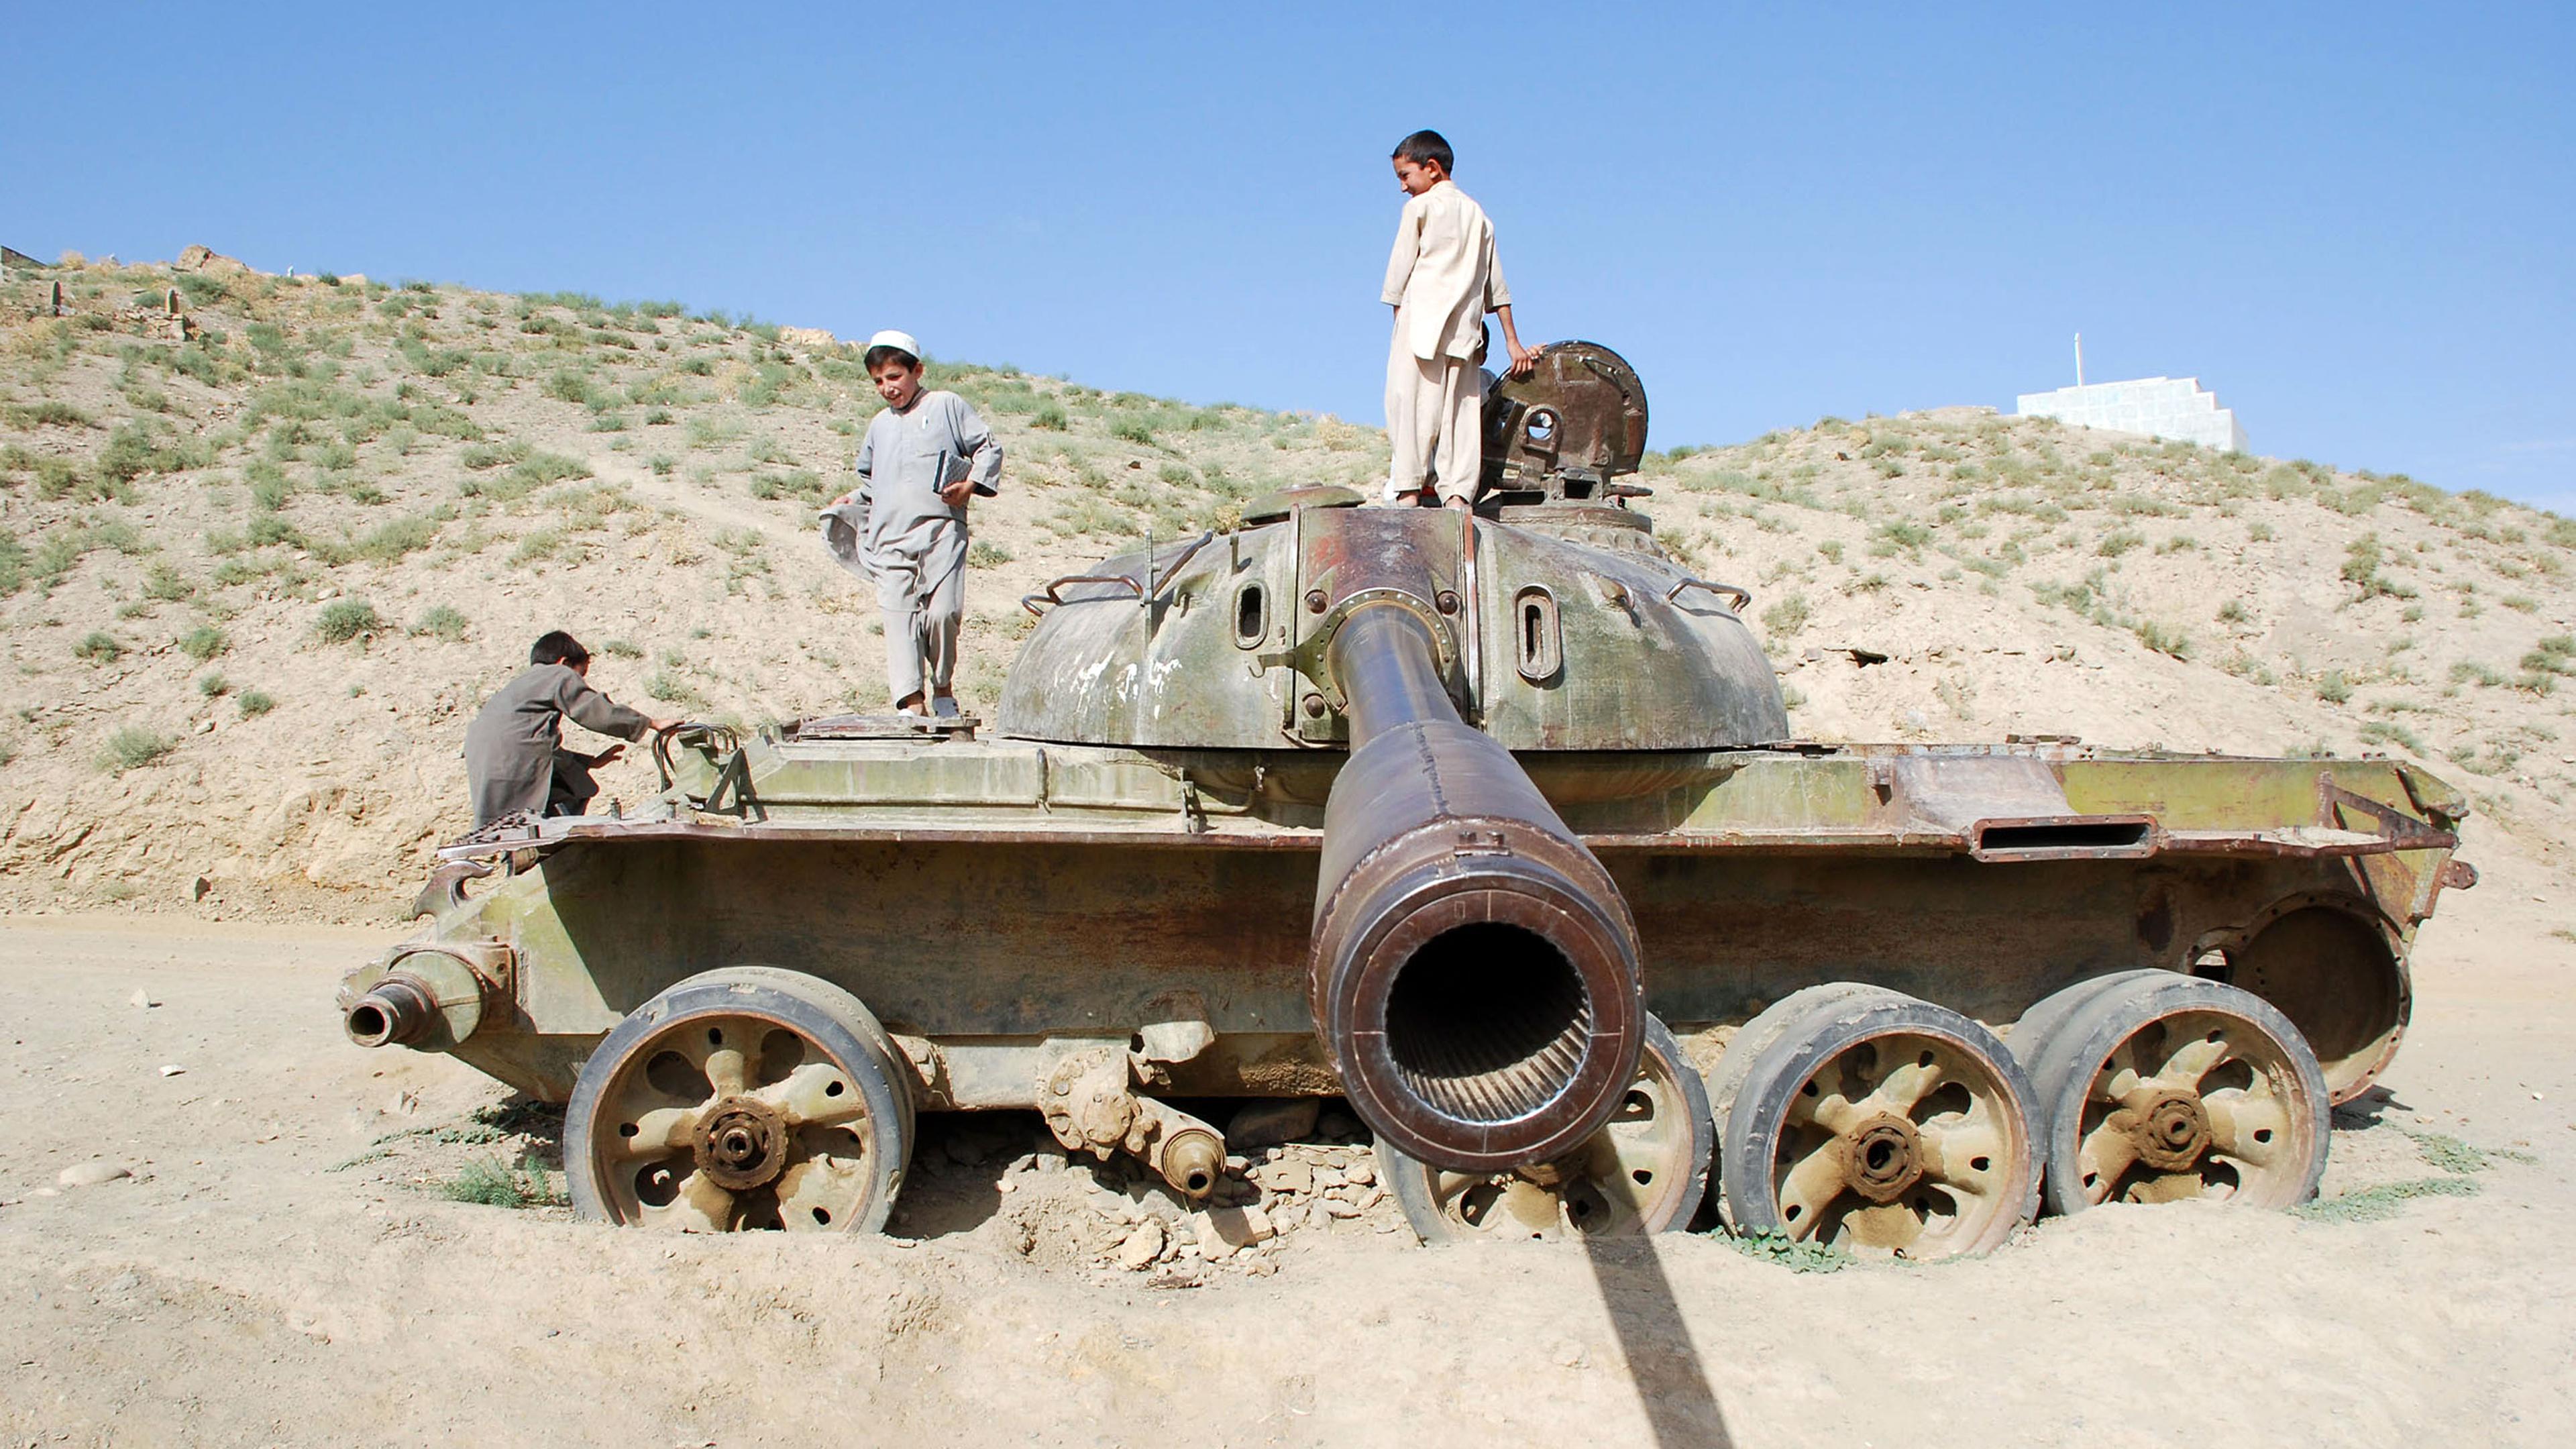 In einer sandigen Landschaft stehen afghanische Kinder auf einem Militärpanzer, das Panzerrohr "zielt" Richtung Kamera.